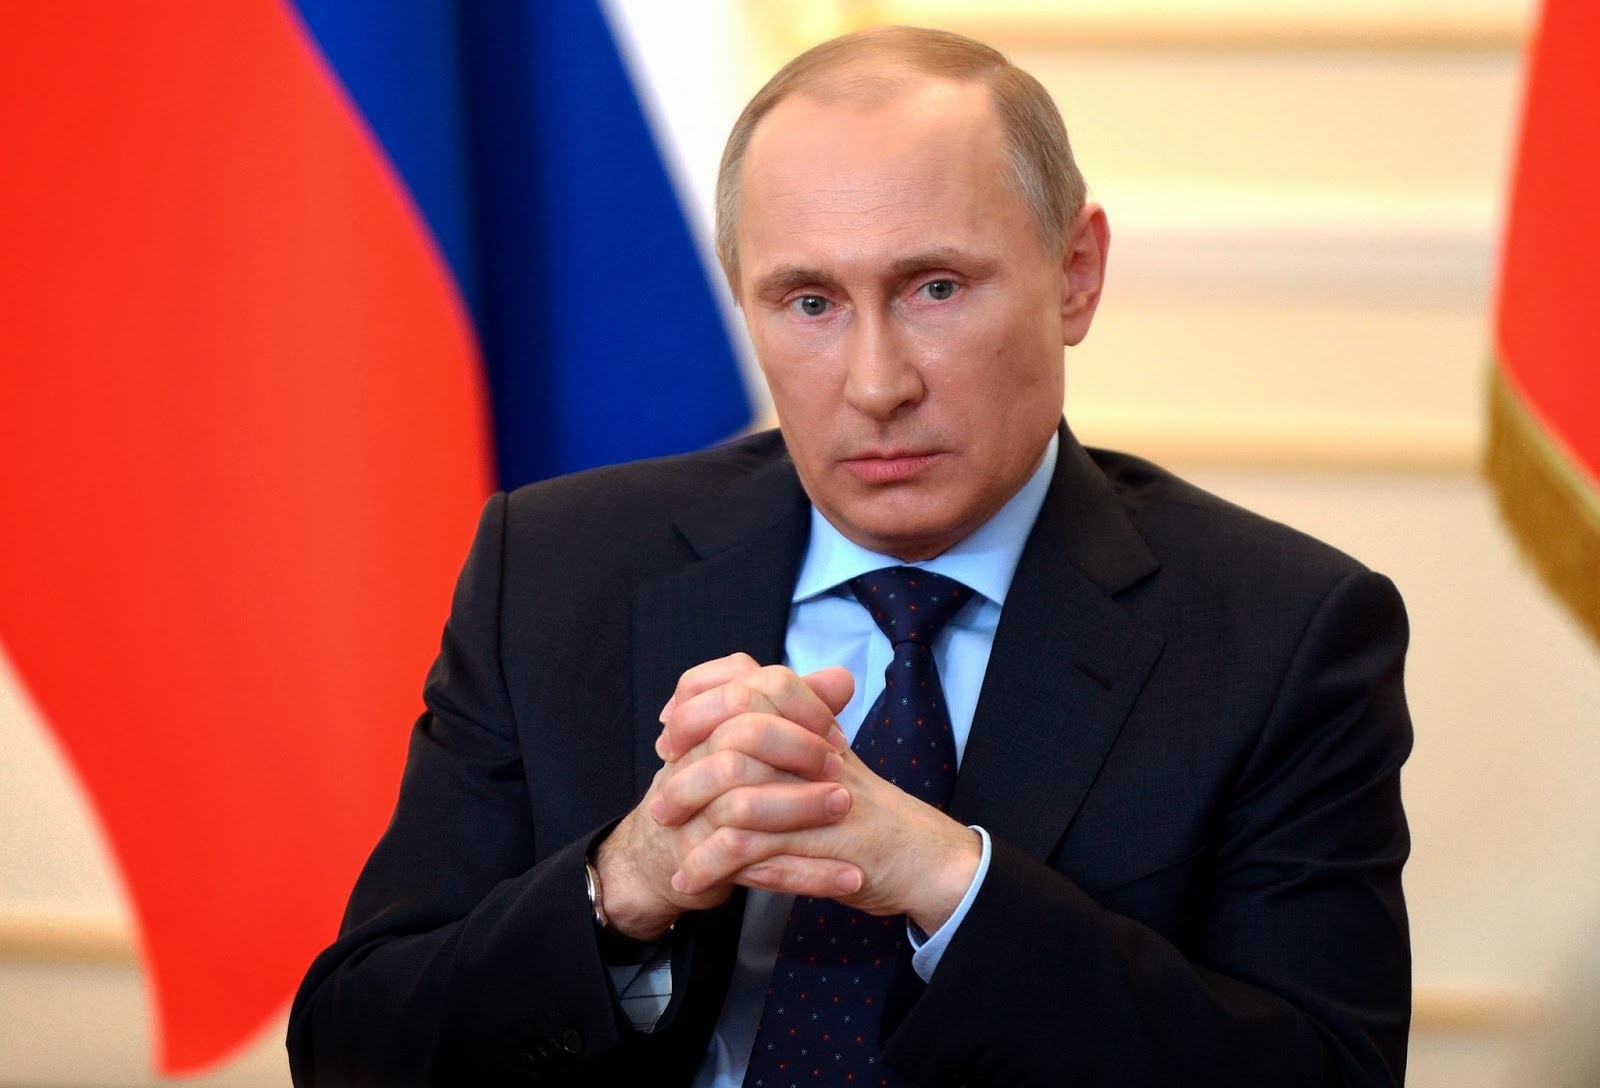 ИноСМИ: Экономический крах России обернется крахом рейтинга Путина среди населения